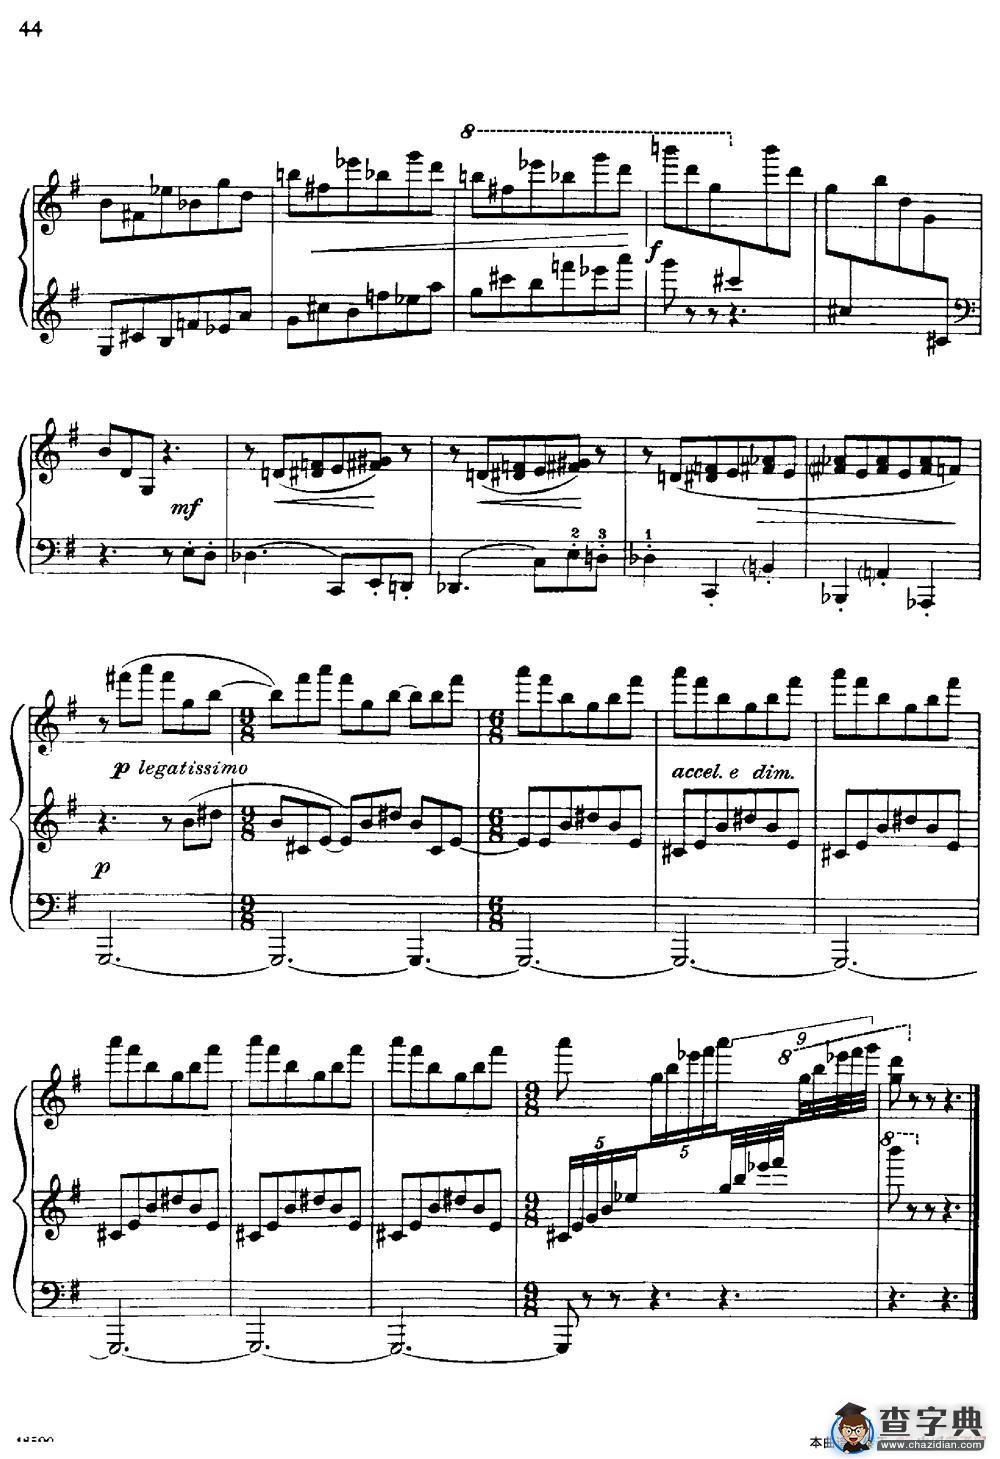 塞缪尔·巴伯 - 降e小调钢琴奏鸣曲 op.26 v.2钢琴谱